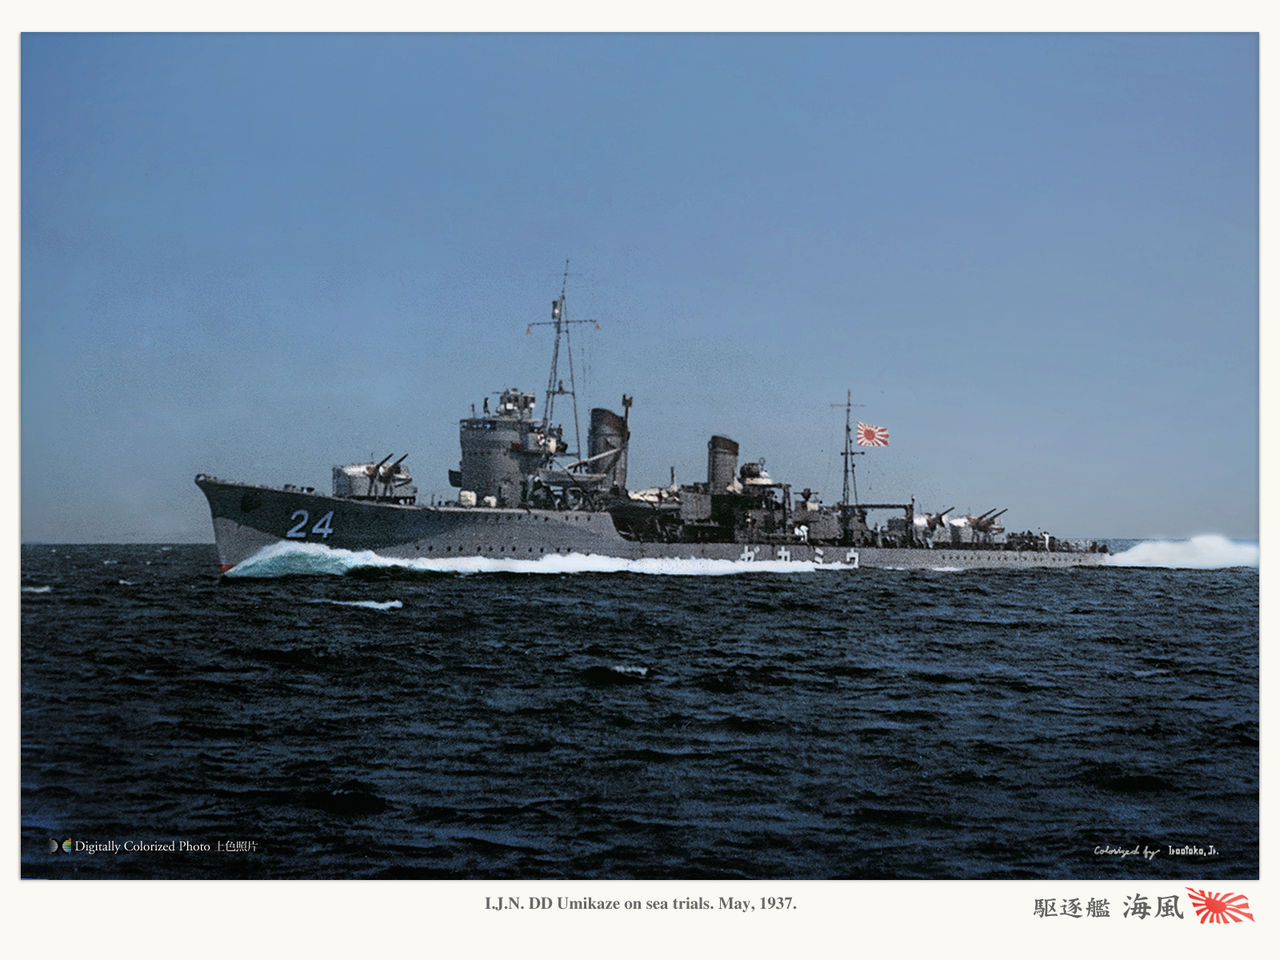 駆逐艦 白露型 Siratsuyu Class Destroyer Monochrome Specter